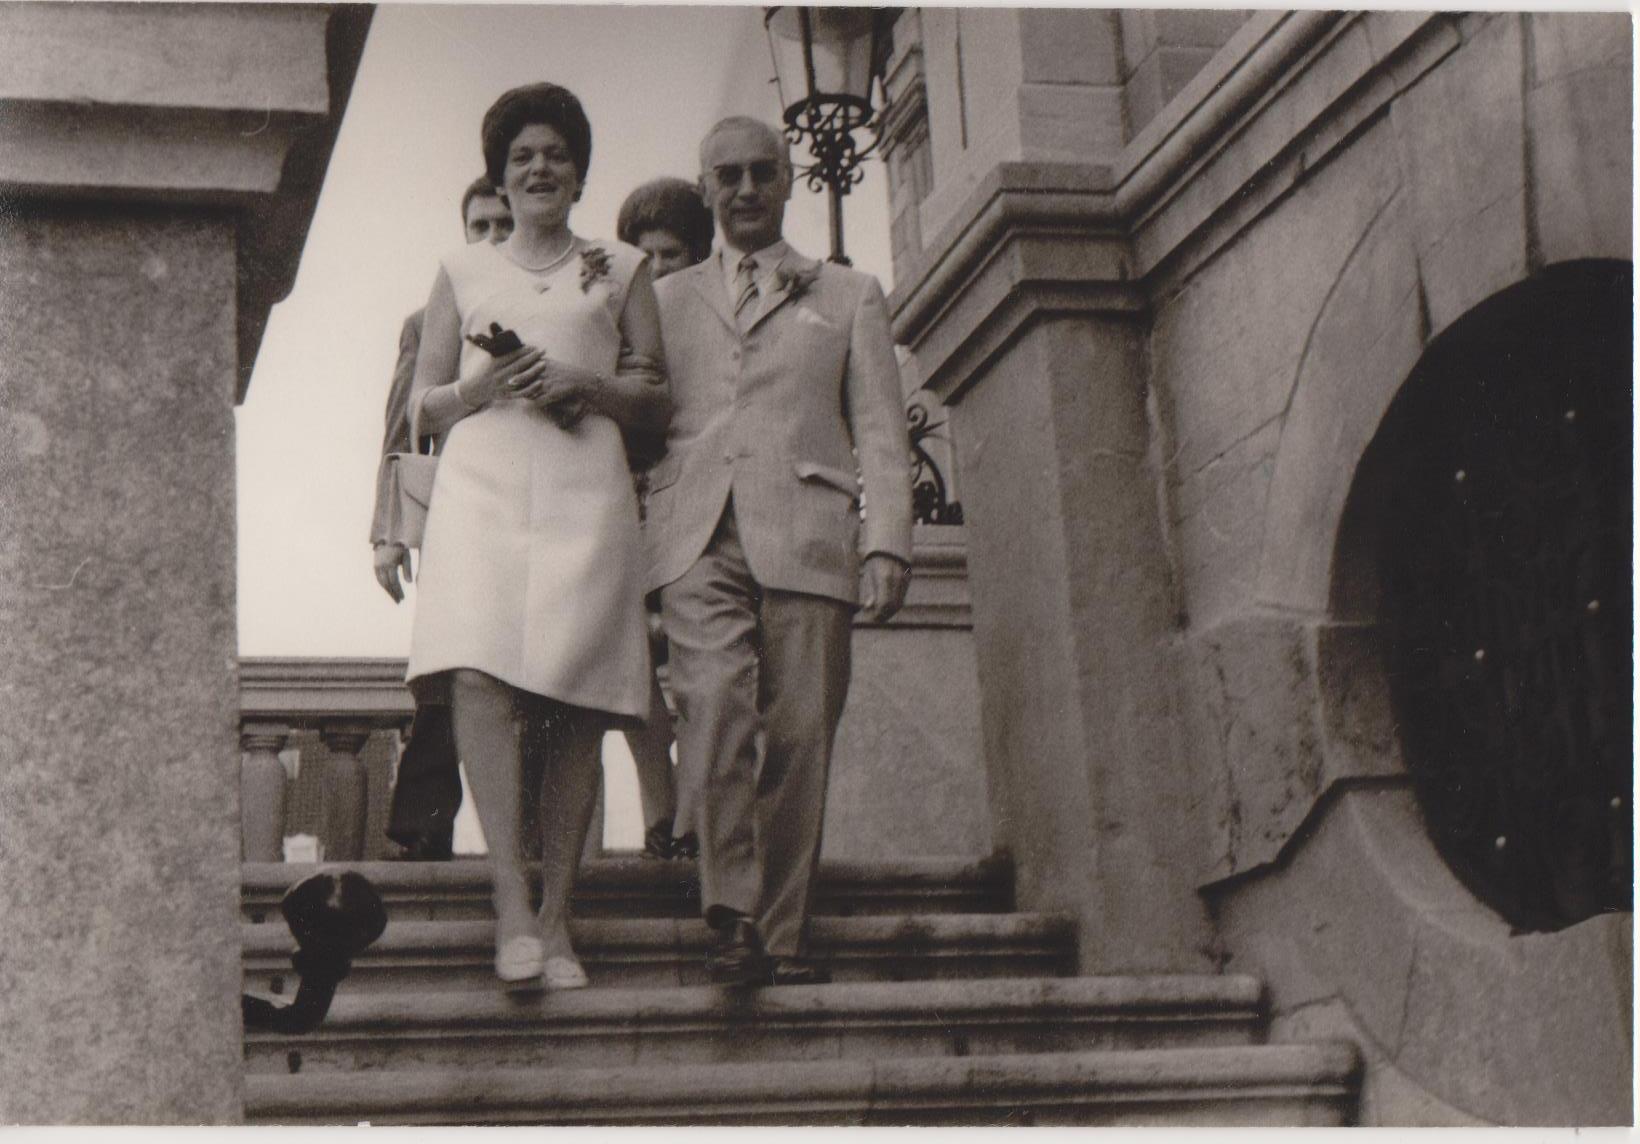 Huwelijk 1971 Leendert HW Keijzer (1912-1990) & Anna H Bus (1927-2013)